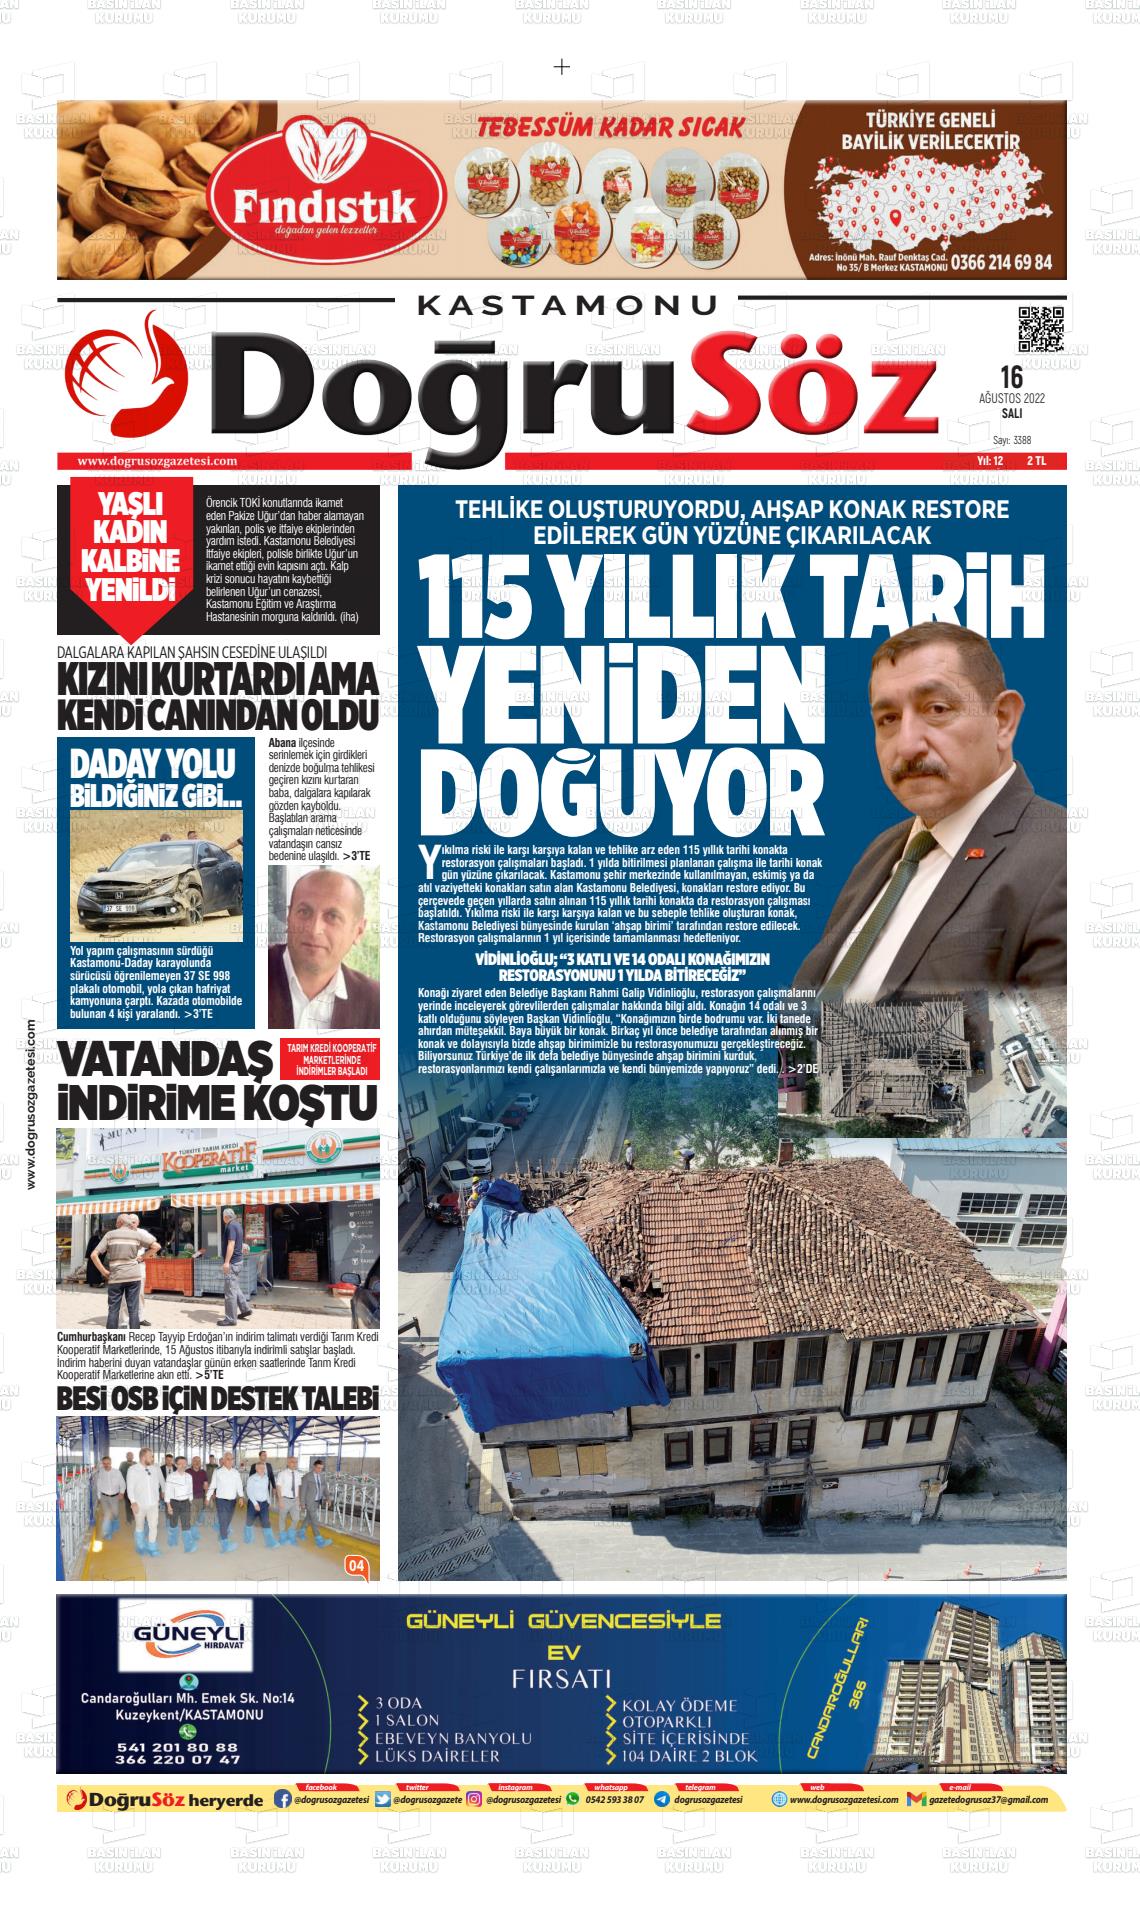 16 Ağustos 2022 Kastamonu Doğrusöz Gazete Manşeti